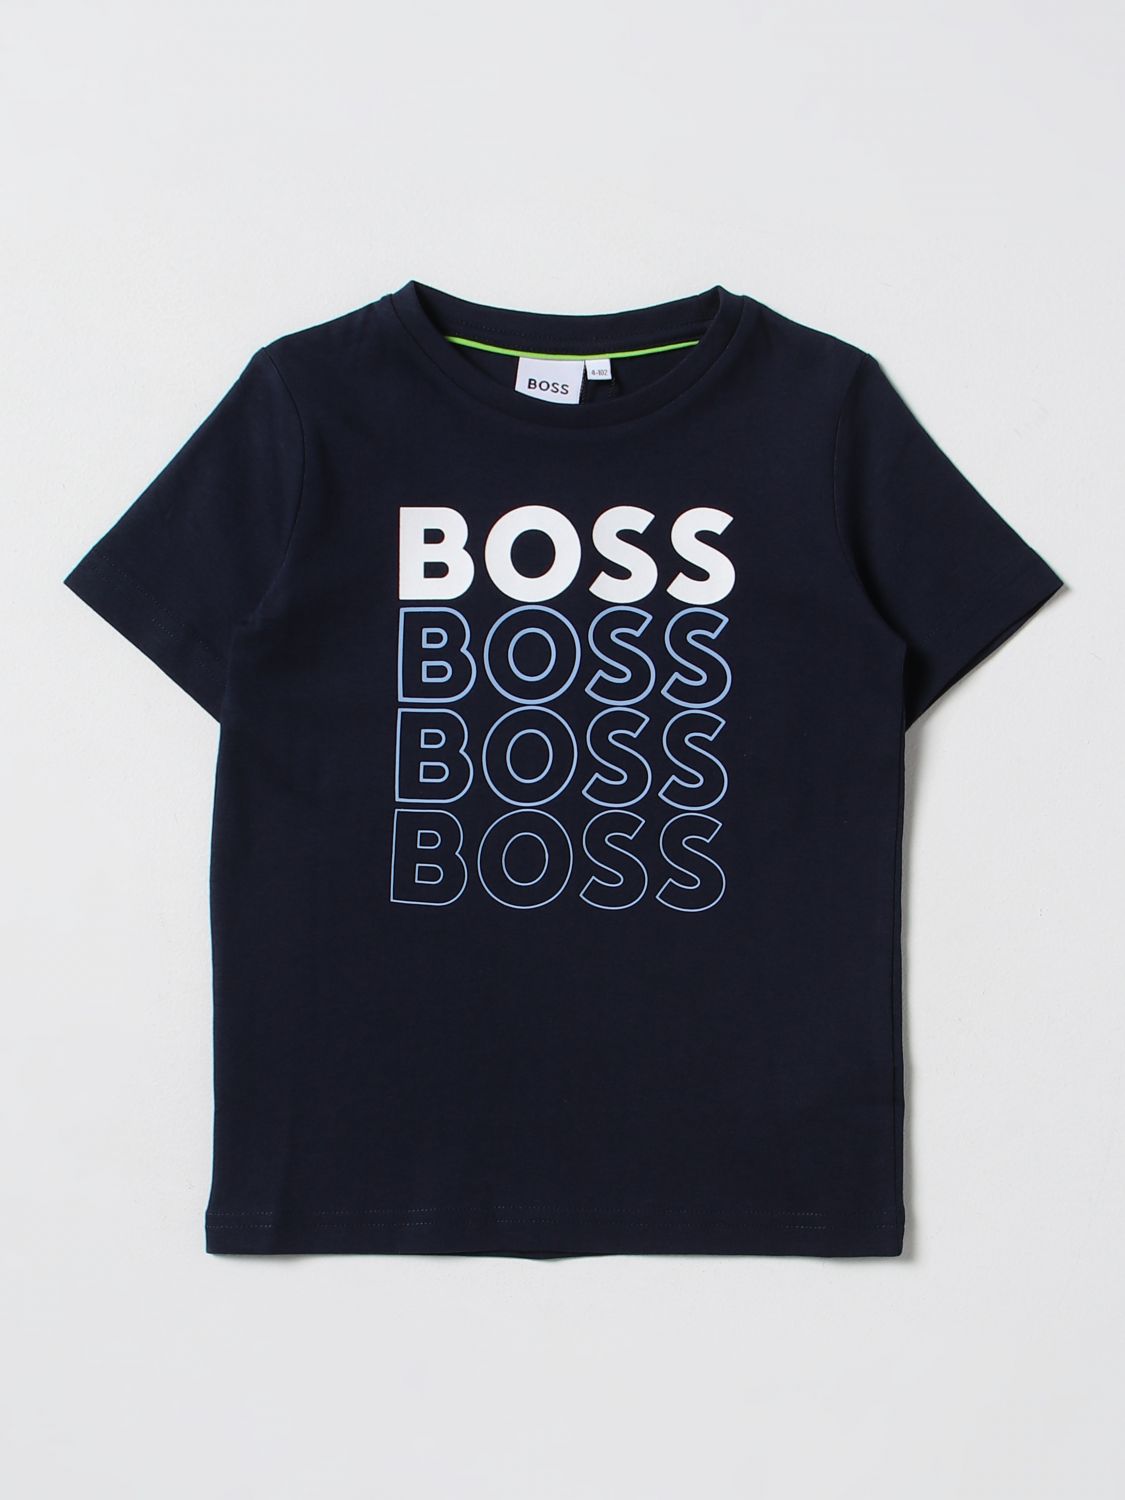 Bosswear T-shirt Boss Kidswear Kids Color Blue